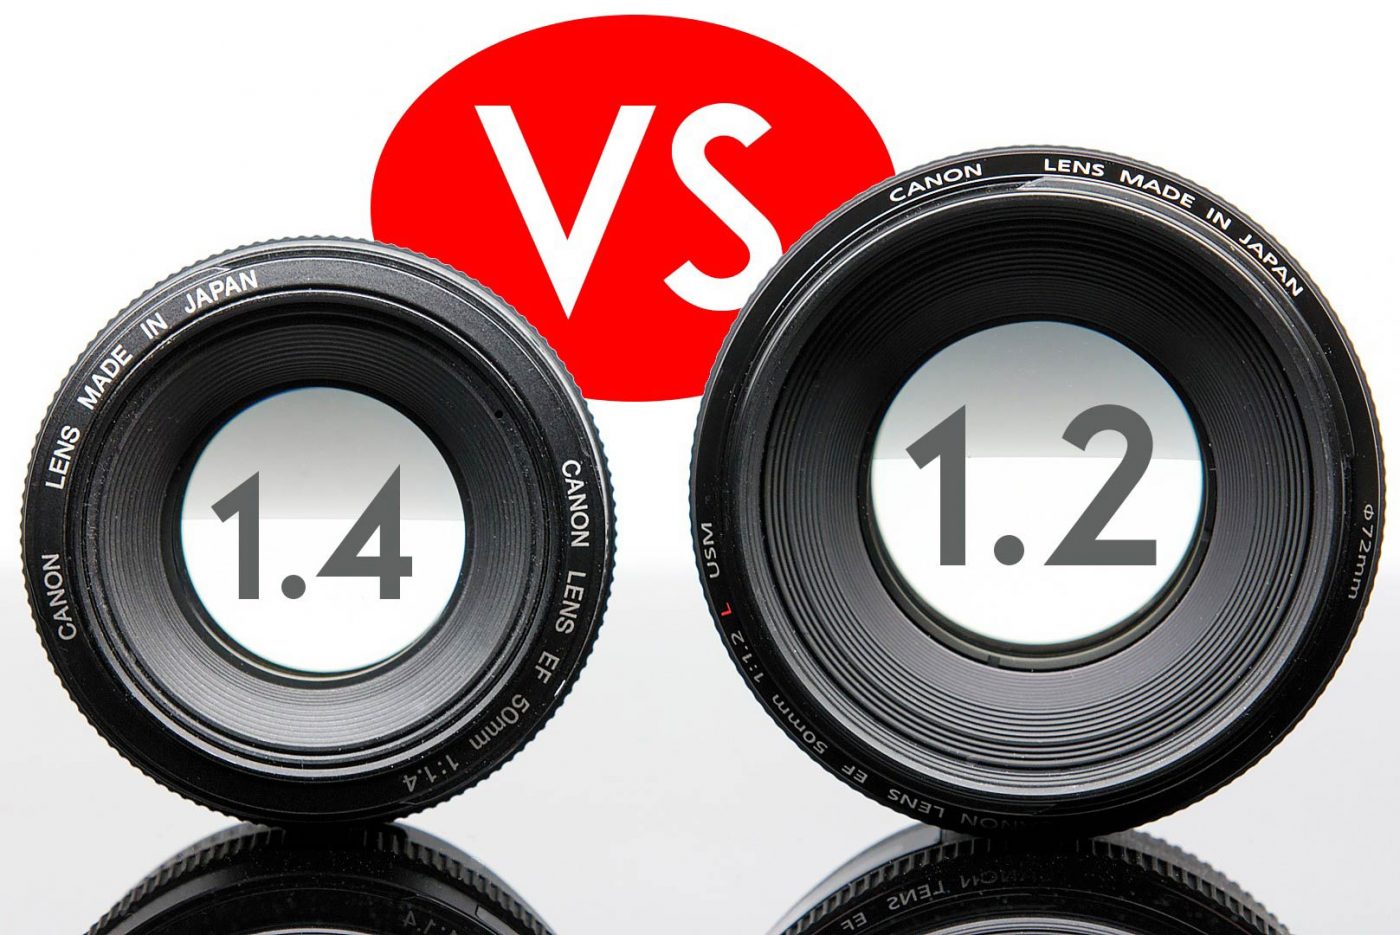 Lens Comparison: Canon mm f.4 vs Canon mm f.2L   Light And